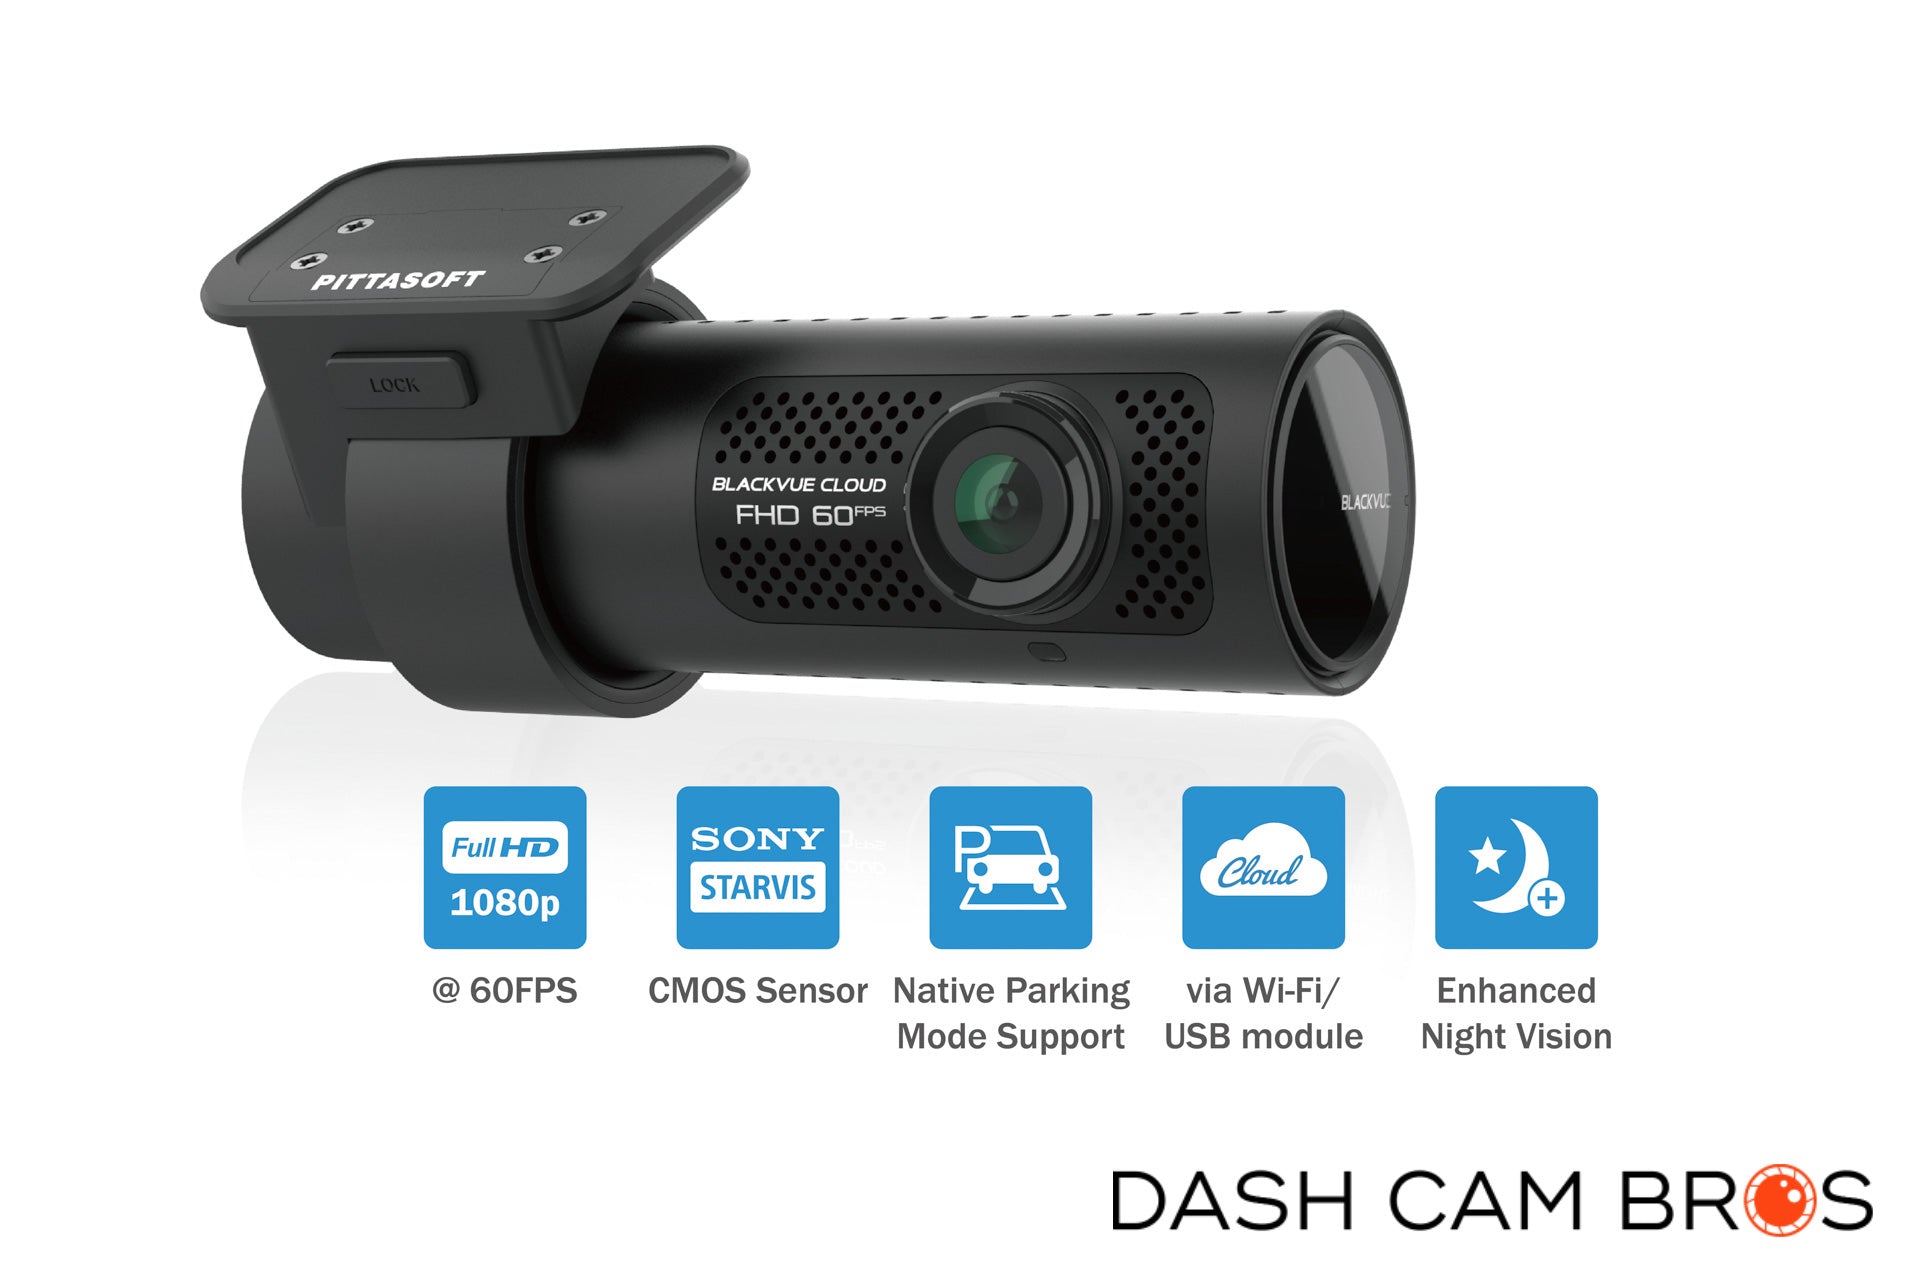 BlackVue DR590X-1CH Single Lens 1080p 60FPS Dash Cam w/ WiFi